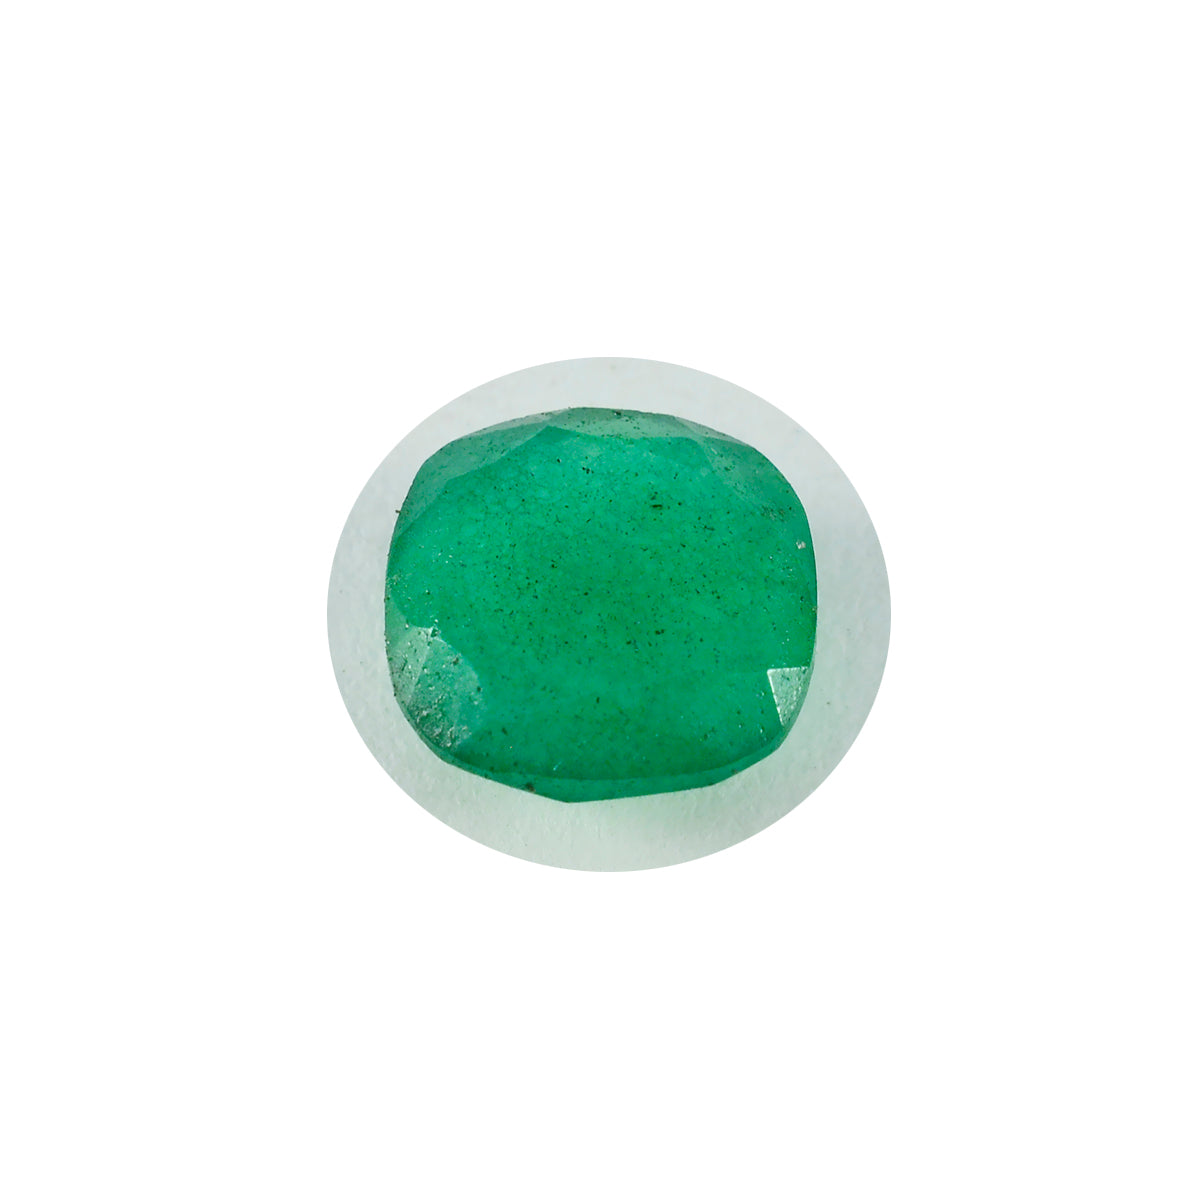 Riyogems 1 Stück echter grüner Jaspis, facettiert, 13 x 13 mm, Kissenform, ausgezeichnete Qualität, loser Stein